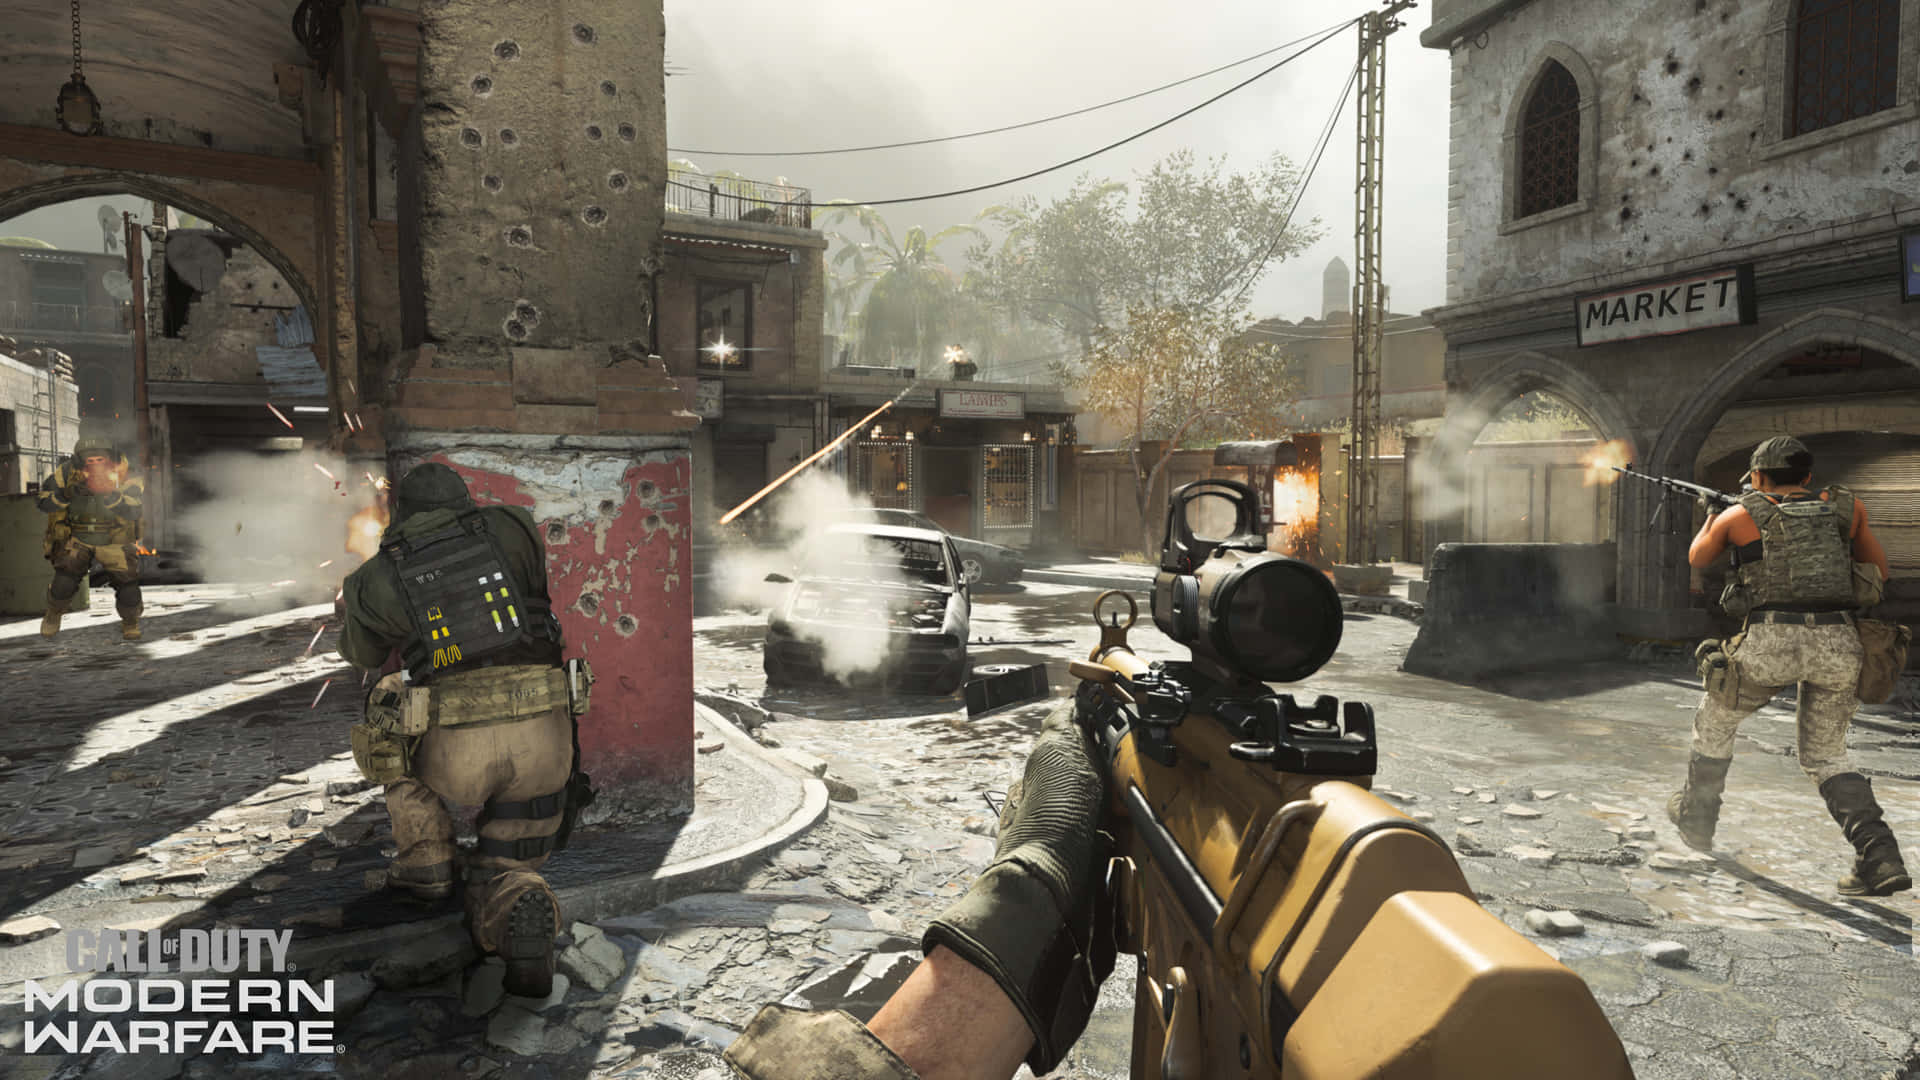 Fondode Pantalla En 4k De Call Of Duty Modern Warfare Mostrando El Juego En Primera Persona Desde El Punto De Vista Del Jugador.